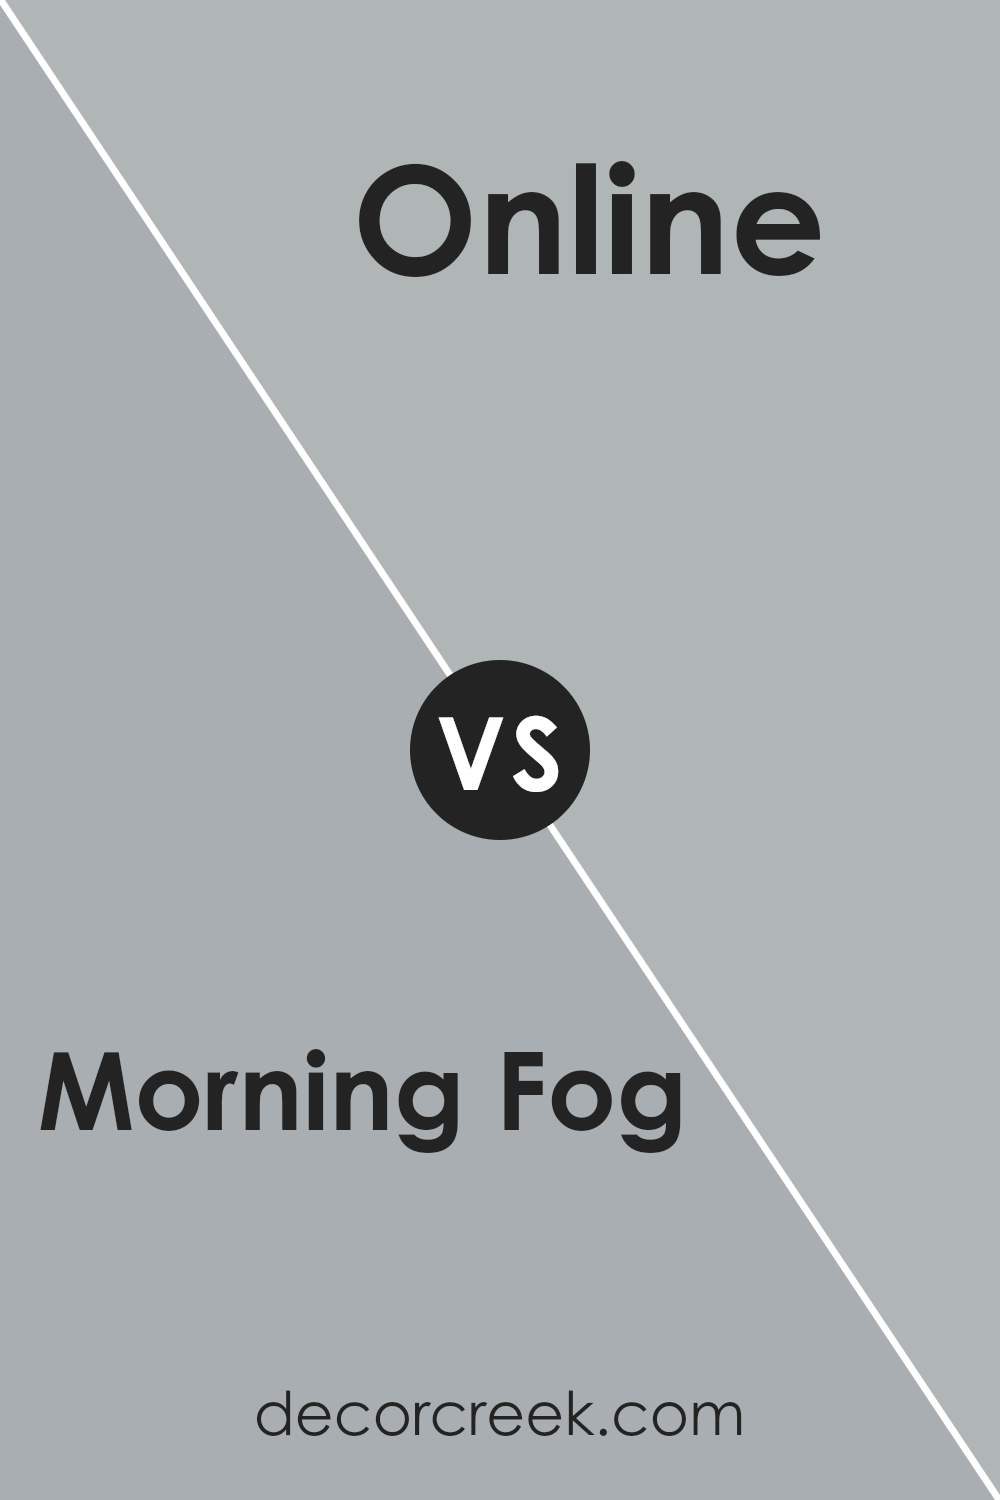 morning_fog_sw_6255_vs_online_sw_7072